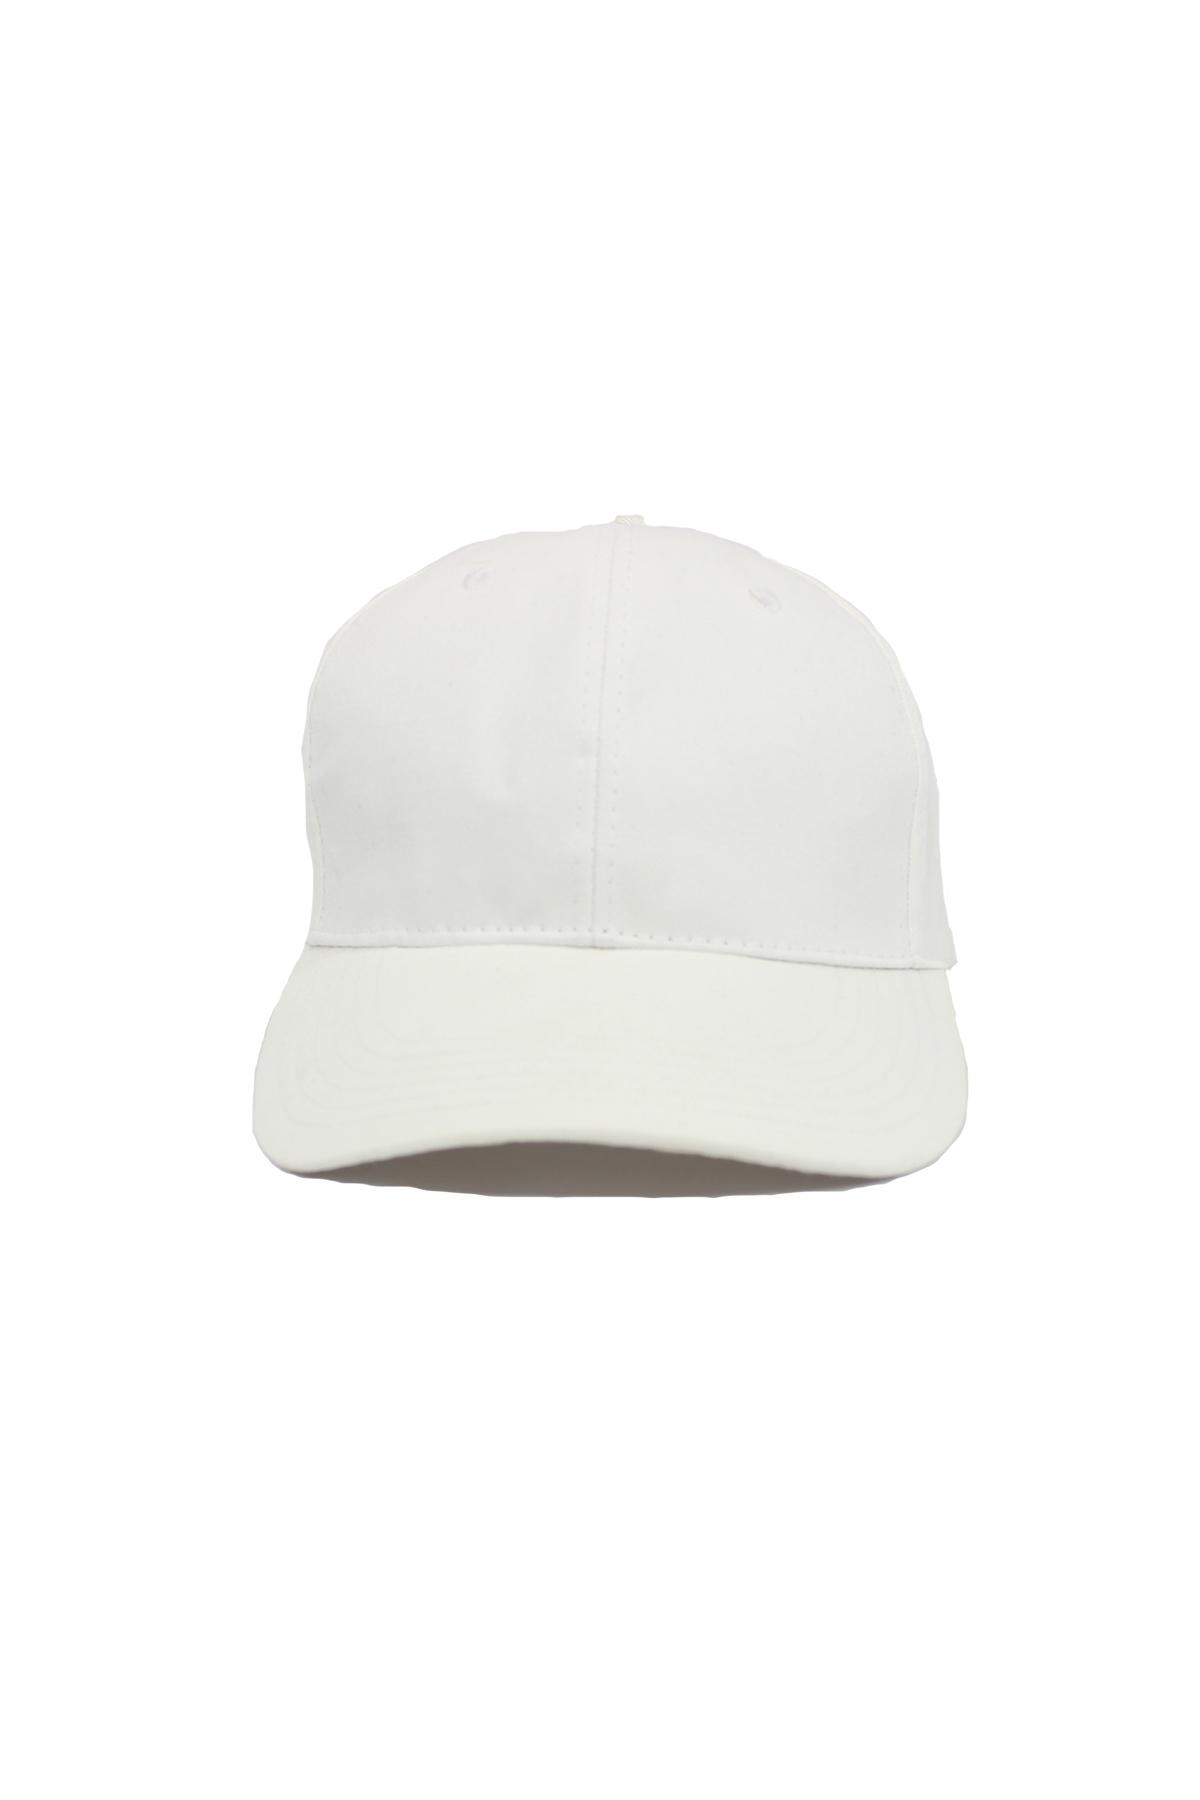 Sade Beyaz (Cırtcırtlı) Şapka